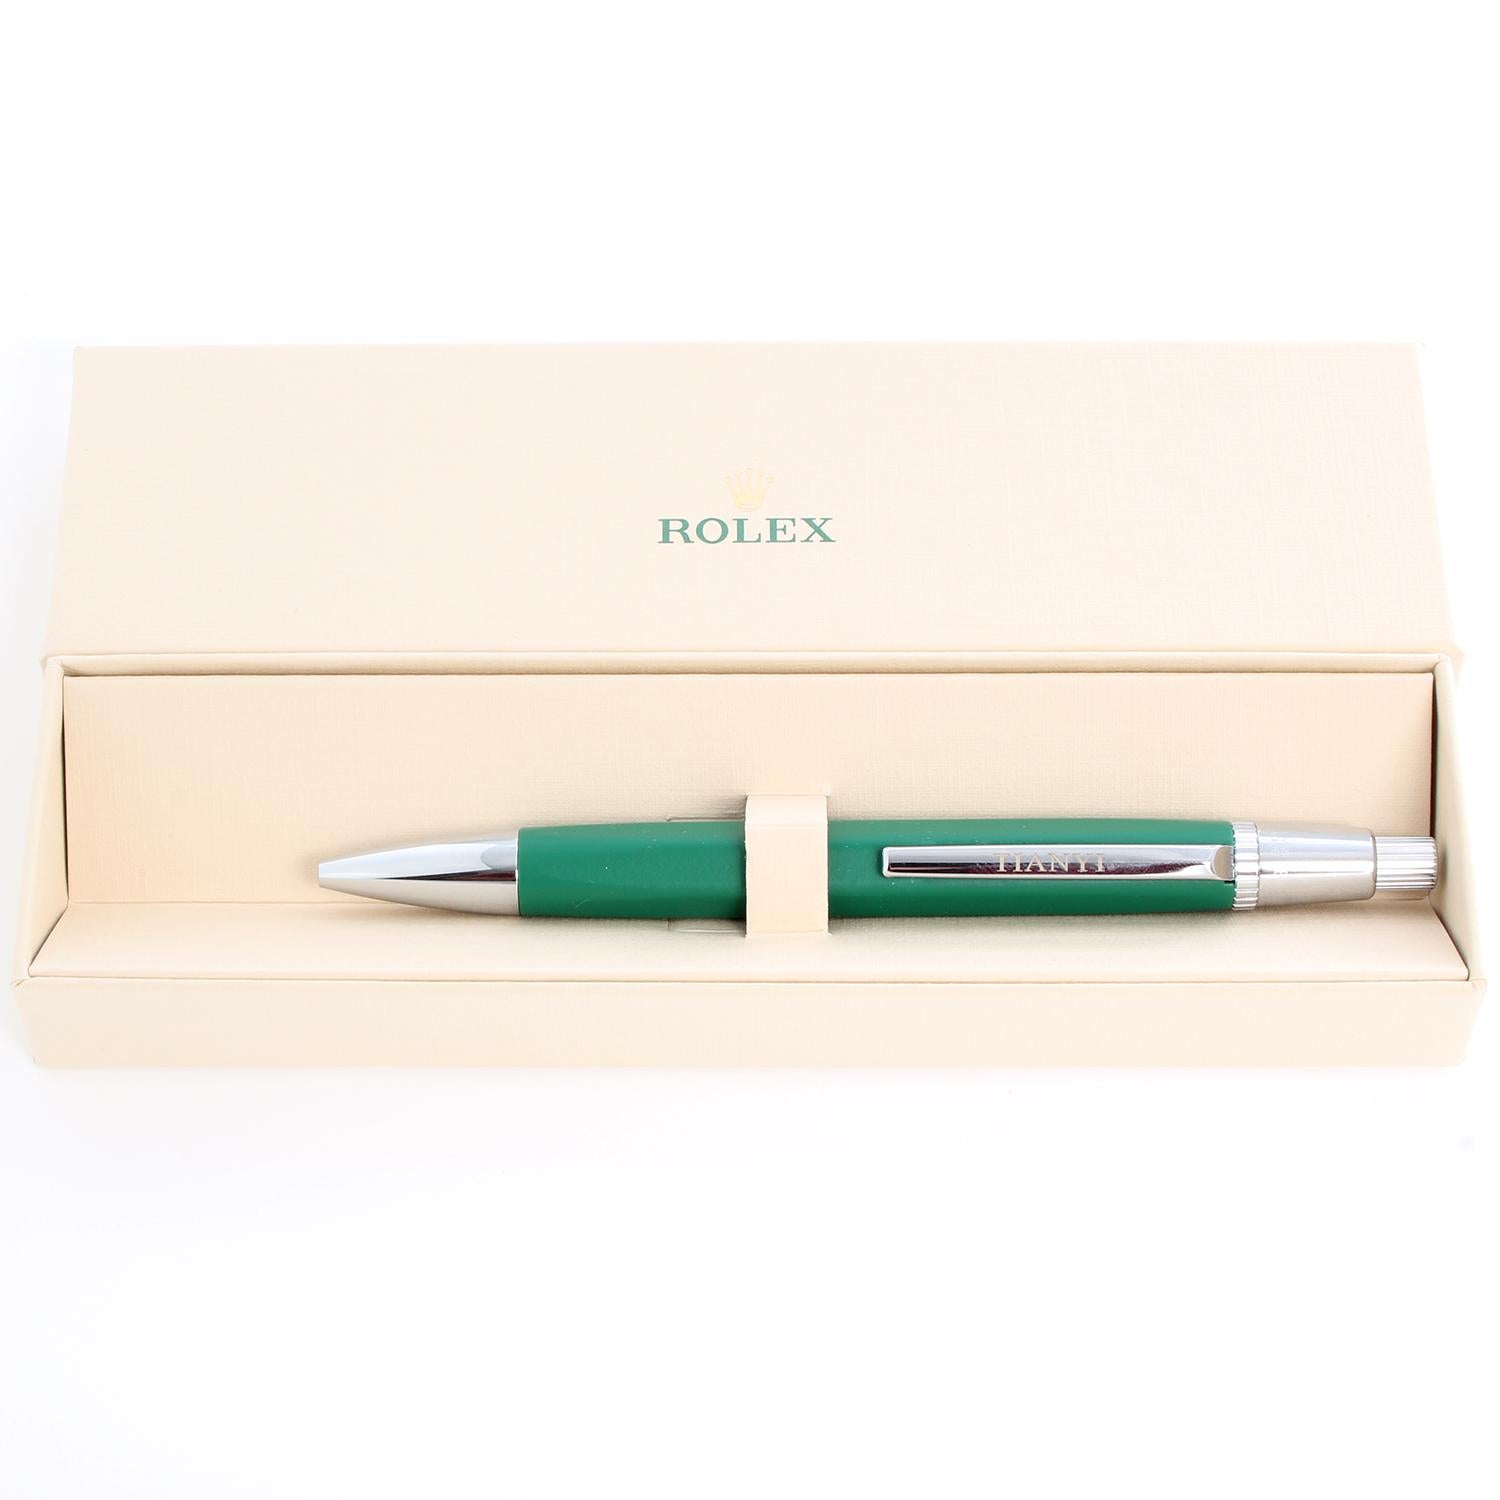 Rolex Pen - 2 For Sale on 1stDibs | rolex pen price, rolex pens, rolex  ballpoint pen